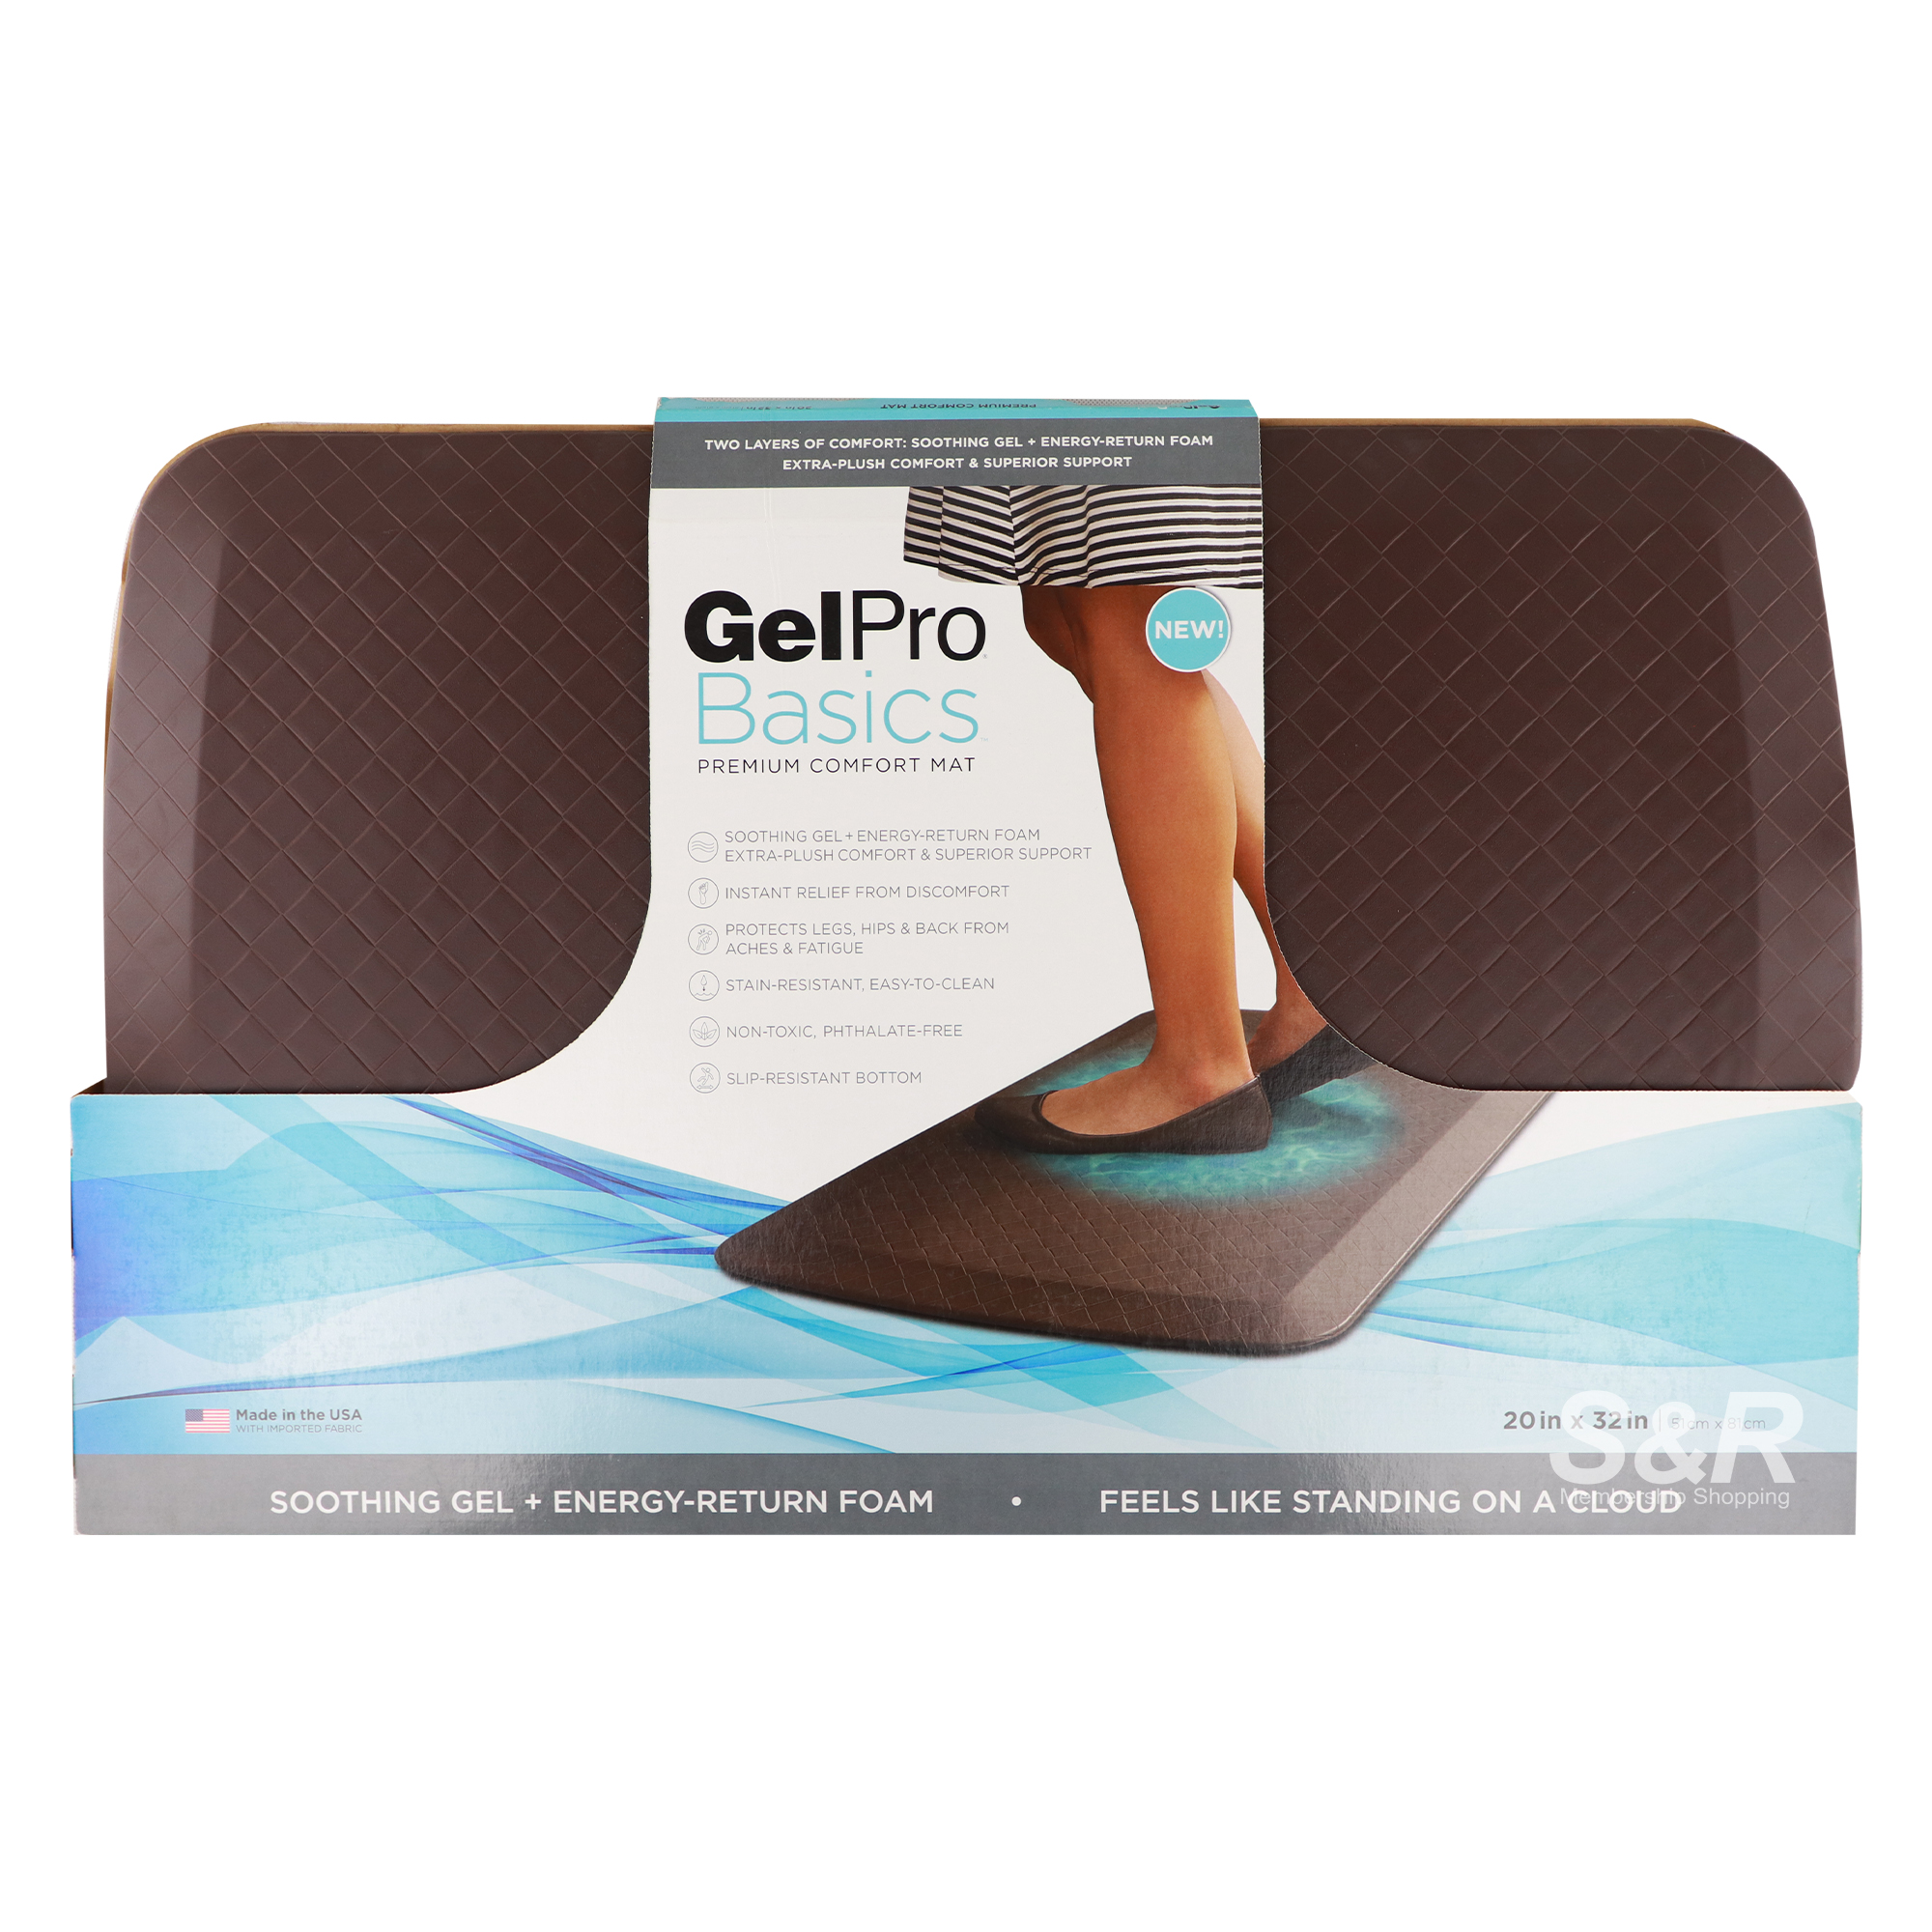 Gelpro Basics Premium Comfort Mat 1pc